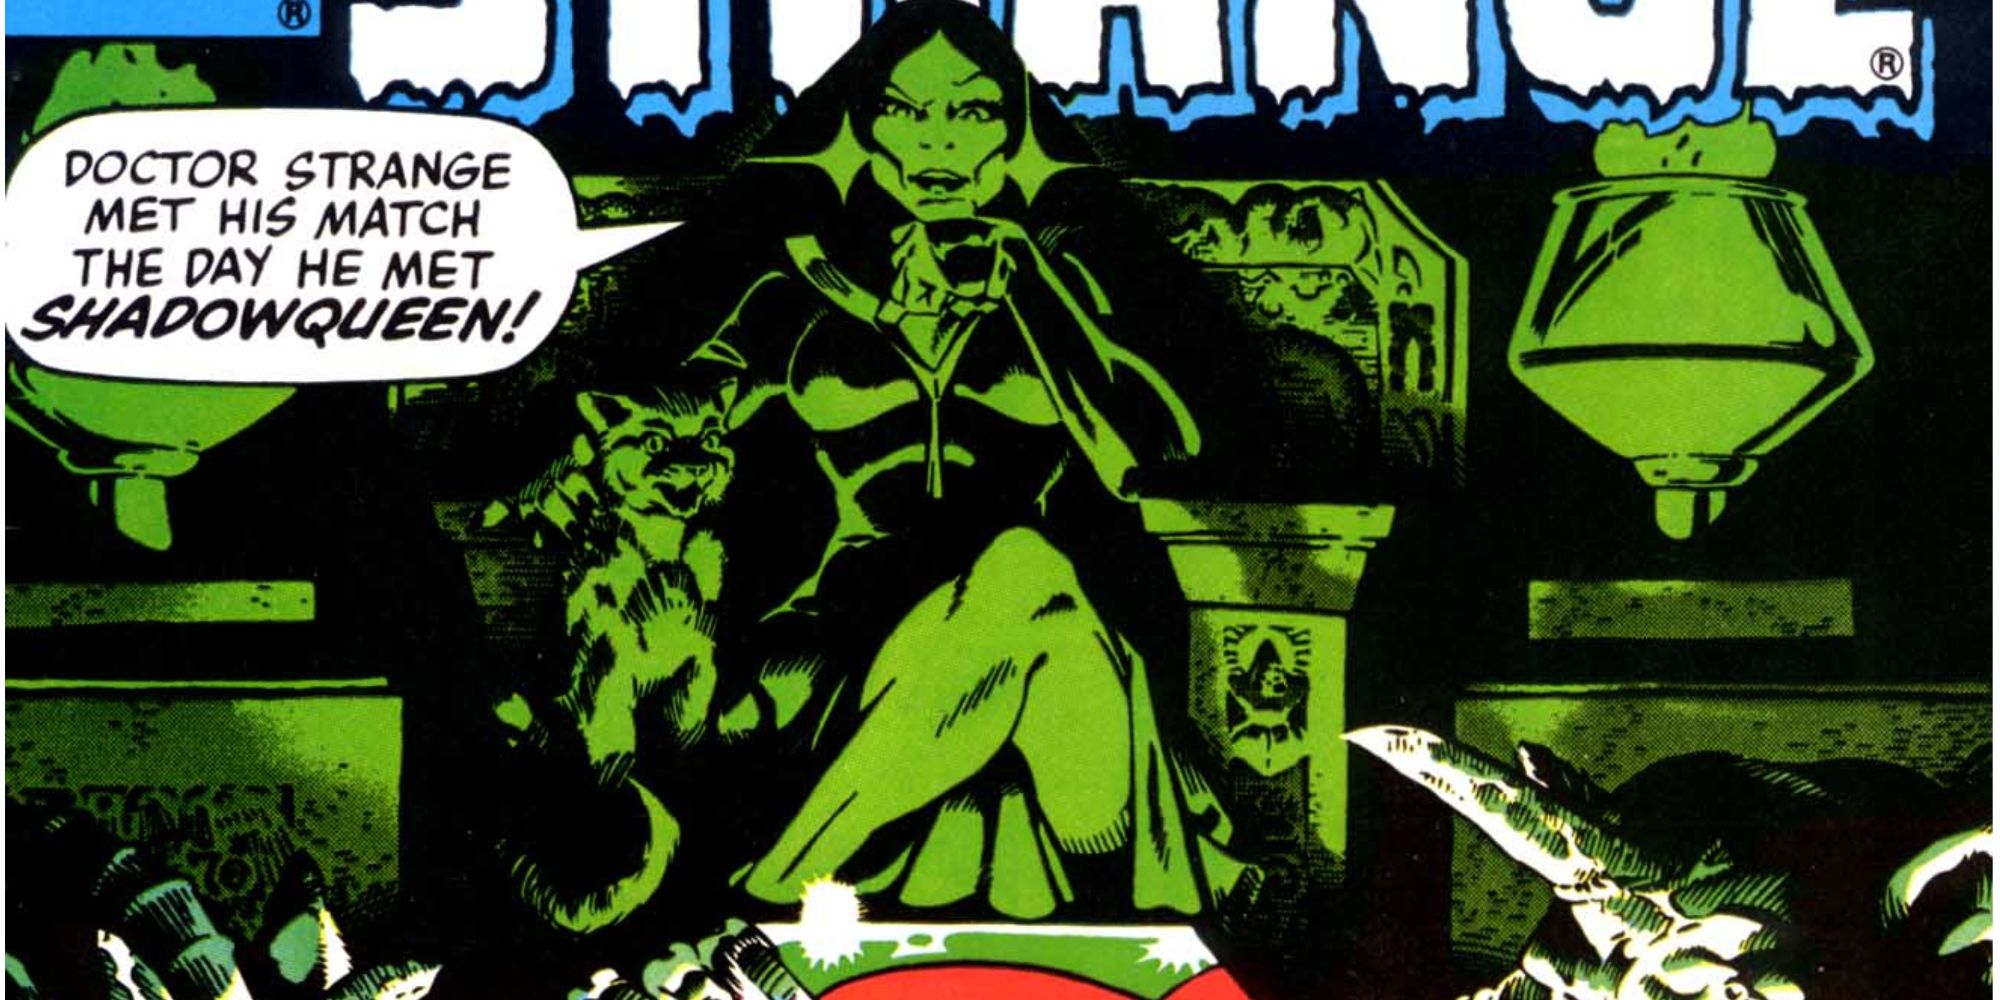 A Rainha das Sombras aparece na Marvel Comics.